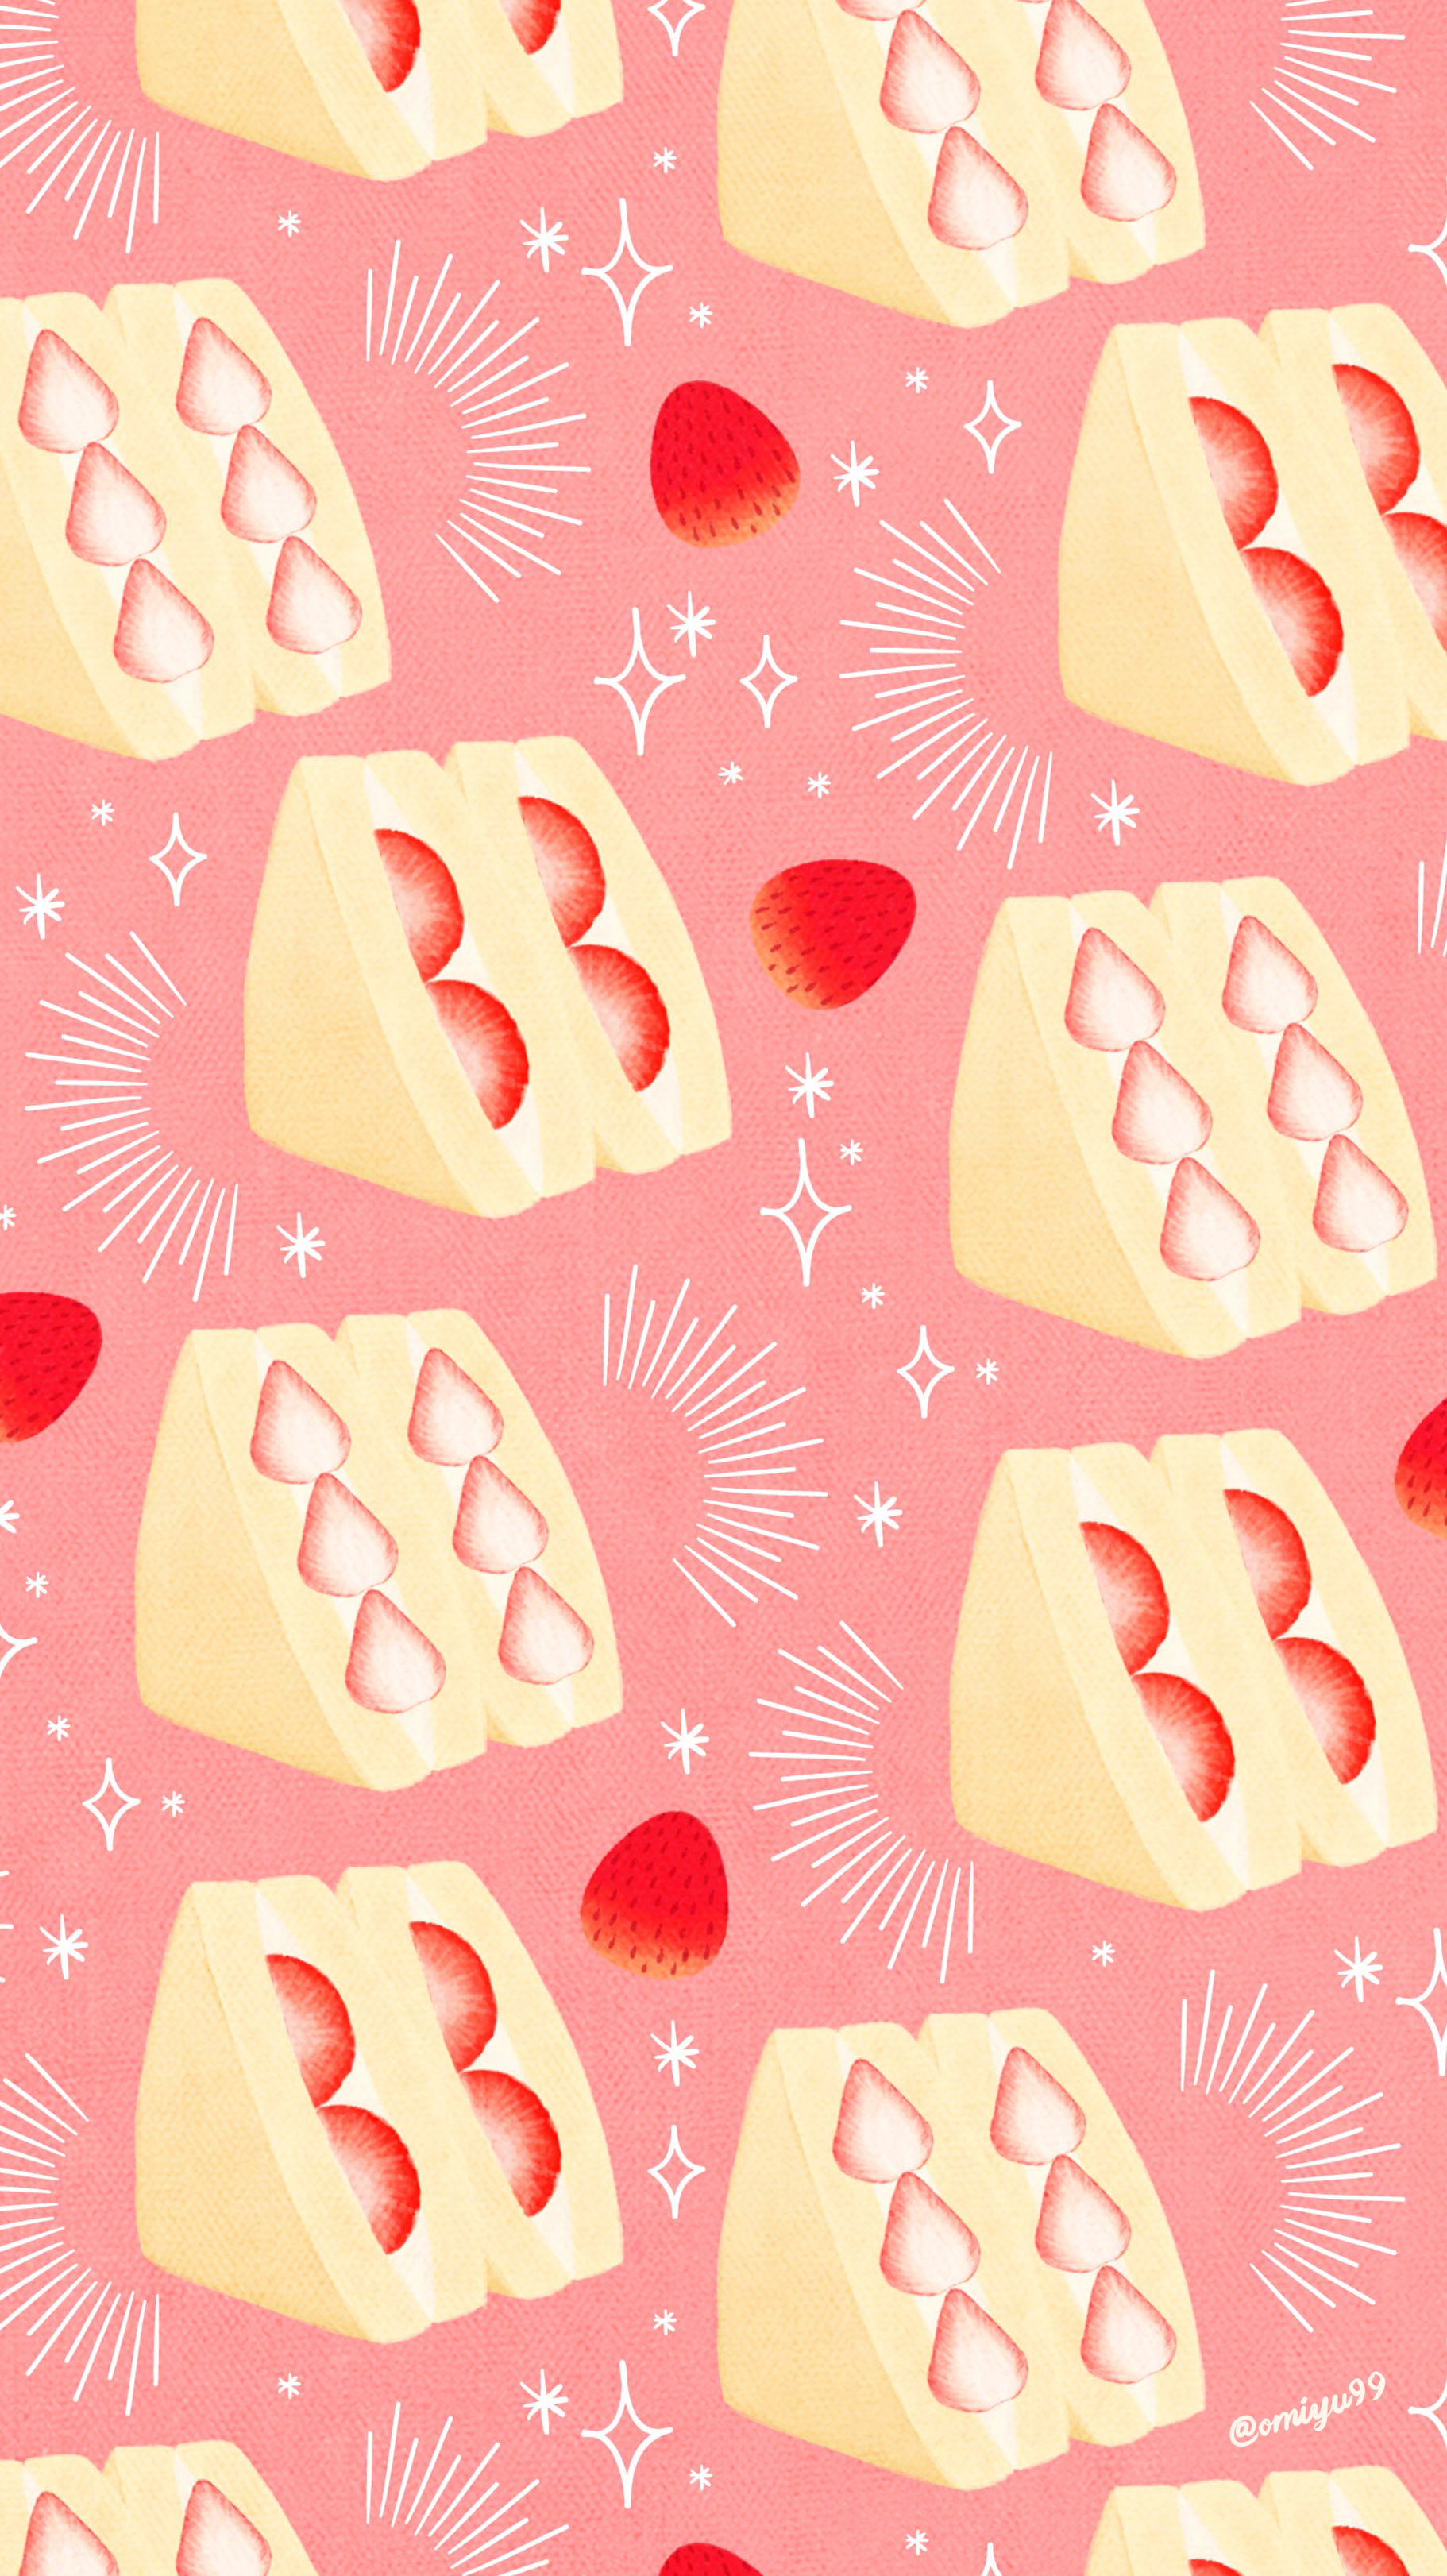 Omiyu 在 Twitter 上 いちごサンドな壁紙 Illust Illustration 壁紙 イラスト Iphone壁紙 サンドイッチ いちご 食べ物 Strawberry Sandwich Fruitssand T Co Ppuk5gpulk Twitter